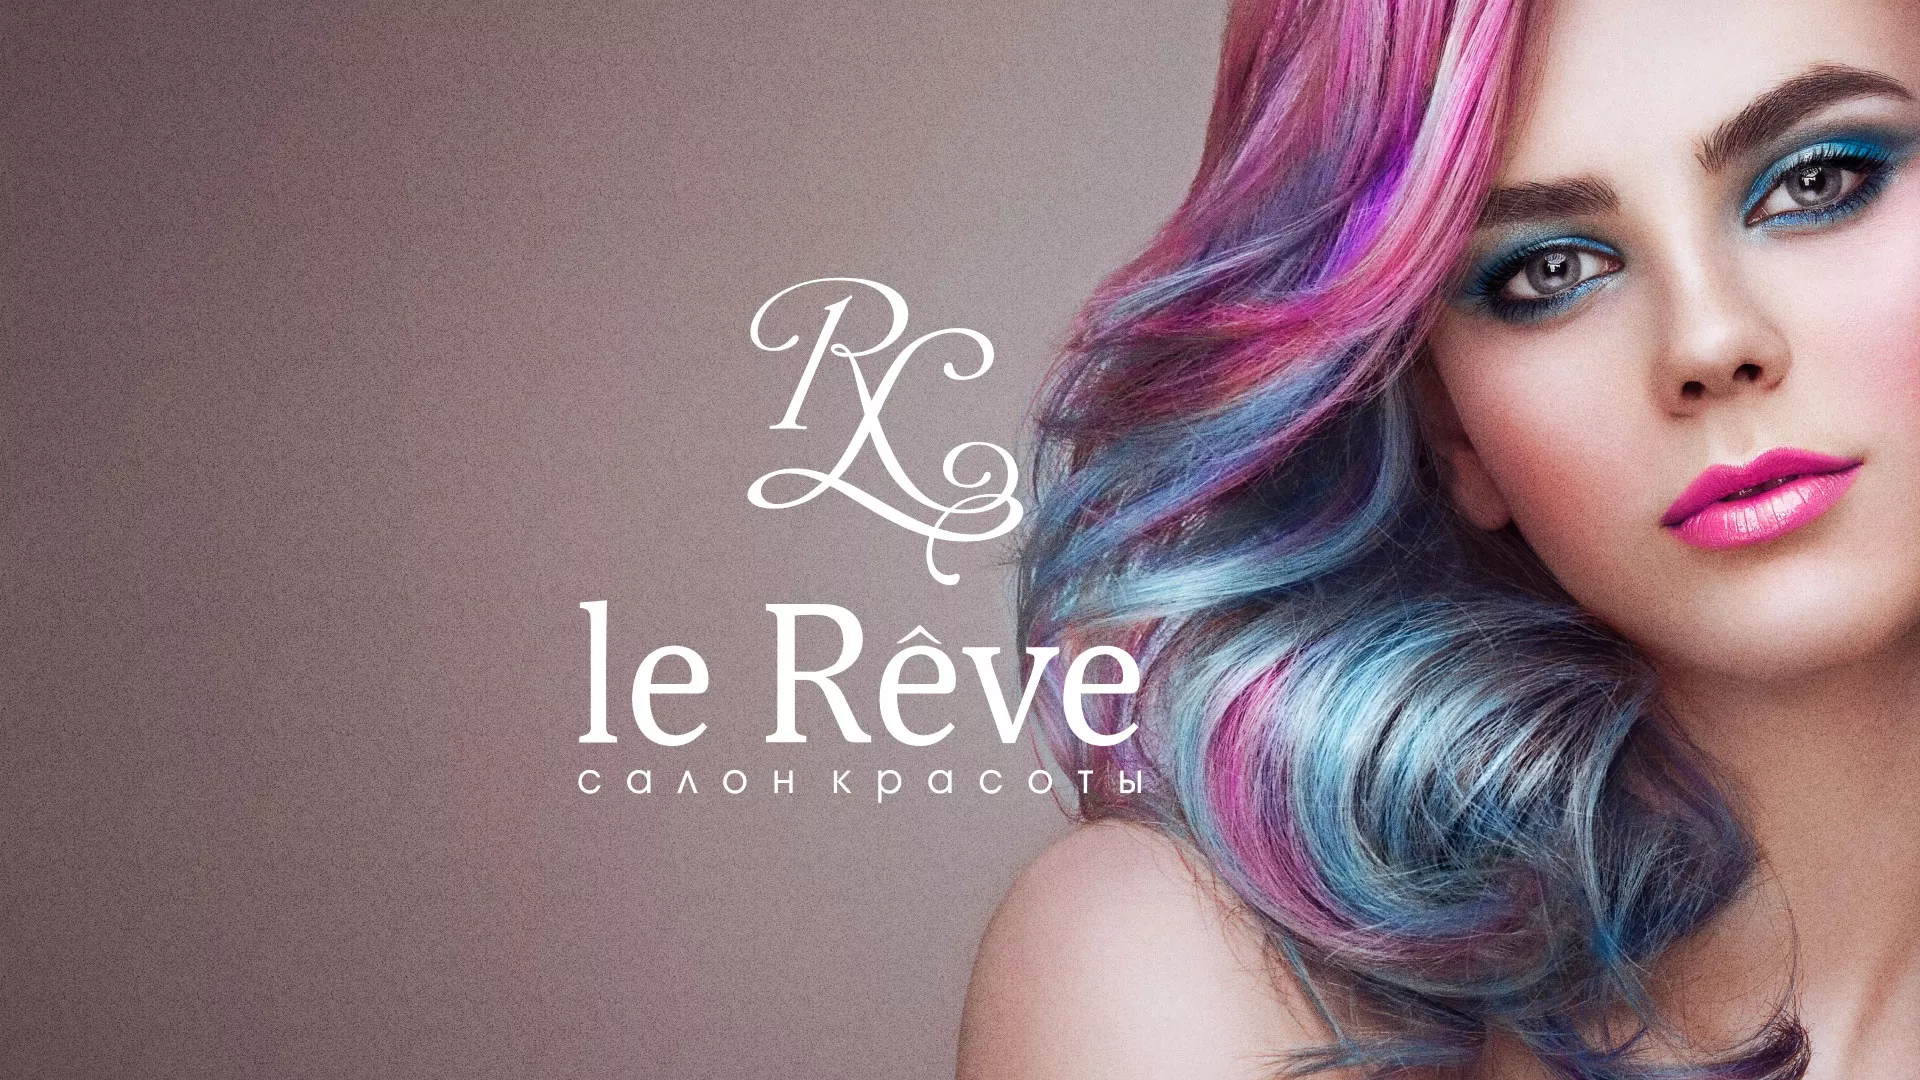 Создание сайта для салона красоты «Le Reve» в Бабаево